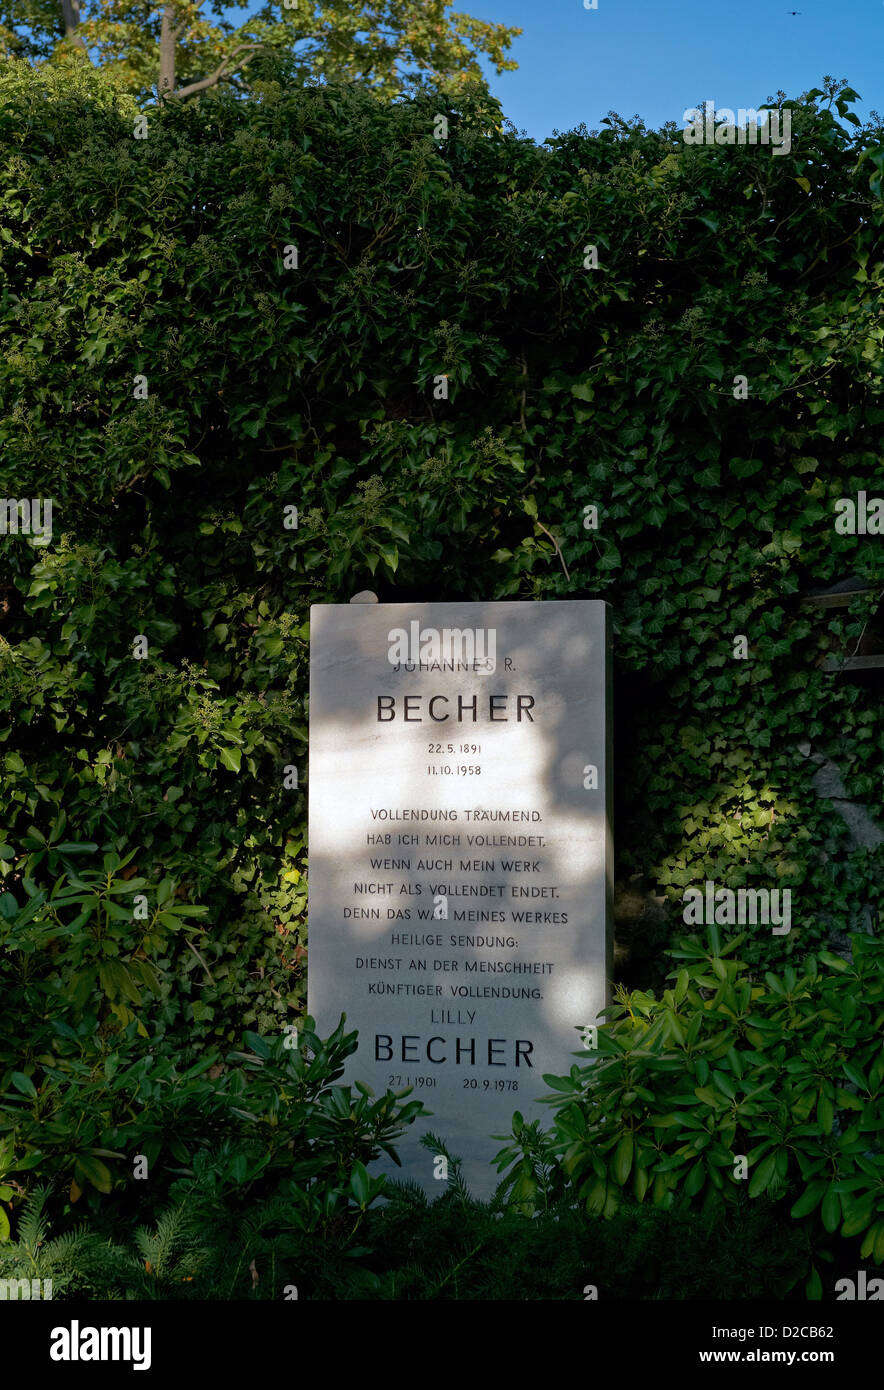 Berlin, Germany, grave of Johannes R. Becher on the cemetery Dorotheenstaedtischen Stock Photo